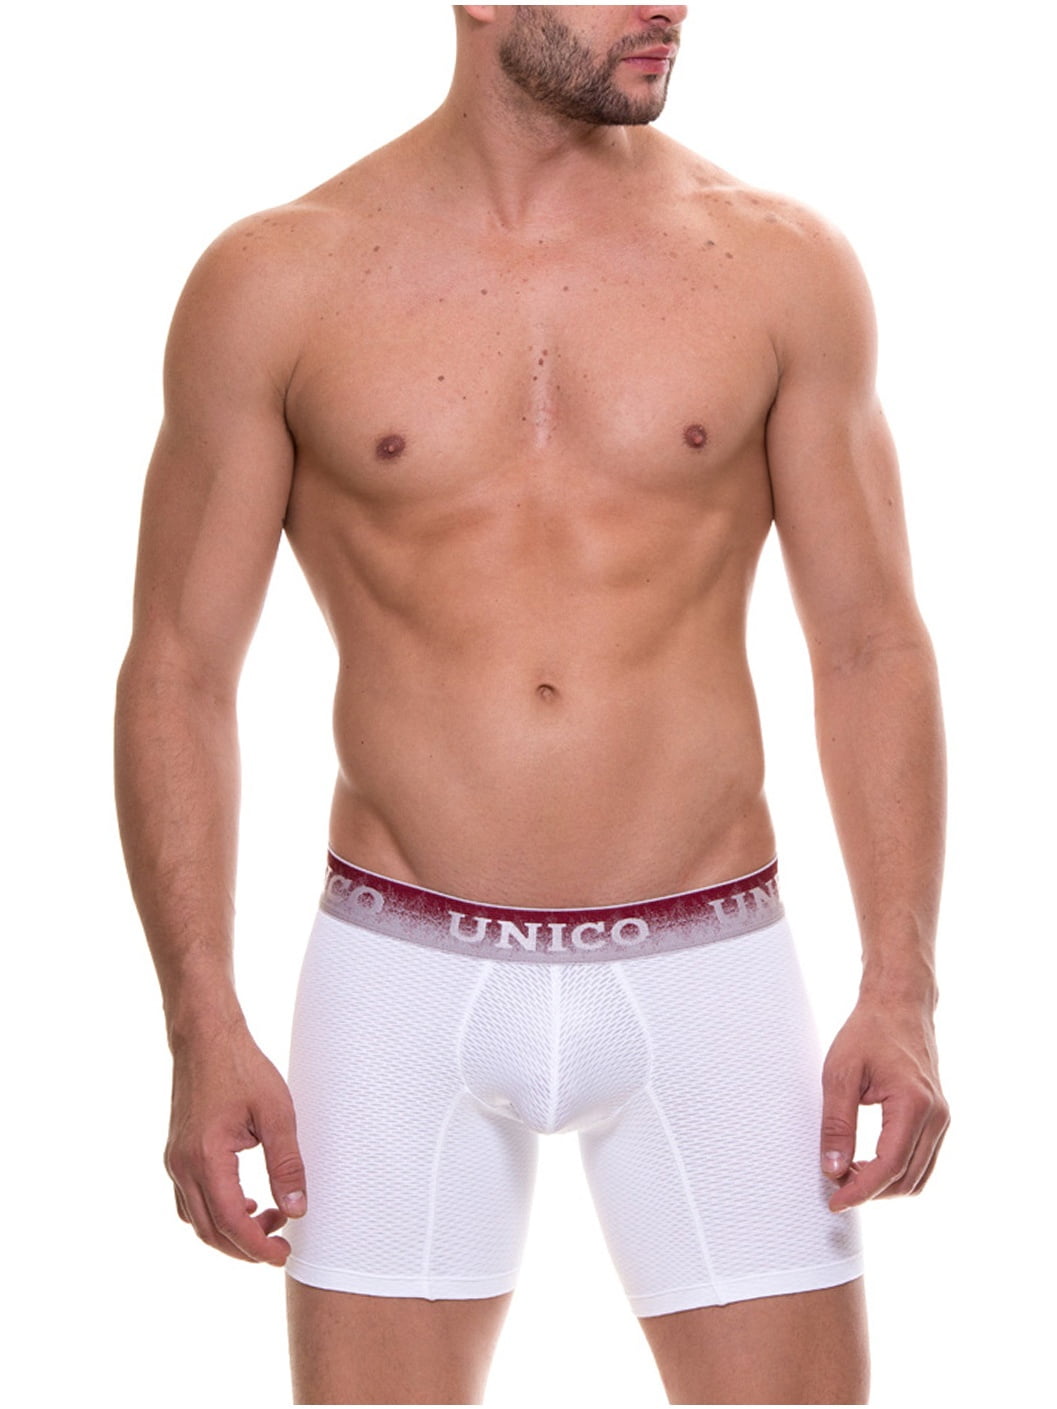 Mundo Unico Microfiber Underwear Jacquard Boxer Briefs Ropa Interior  Masculina 